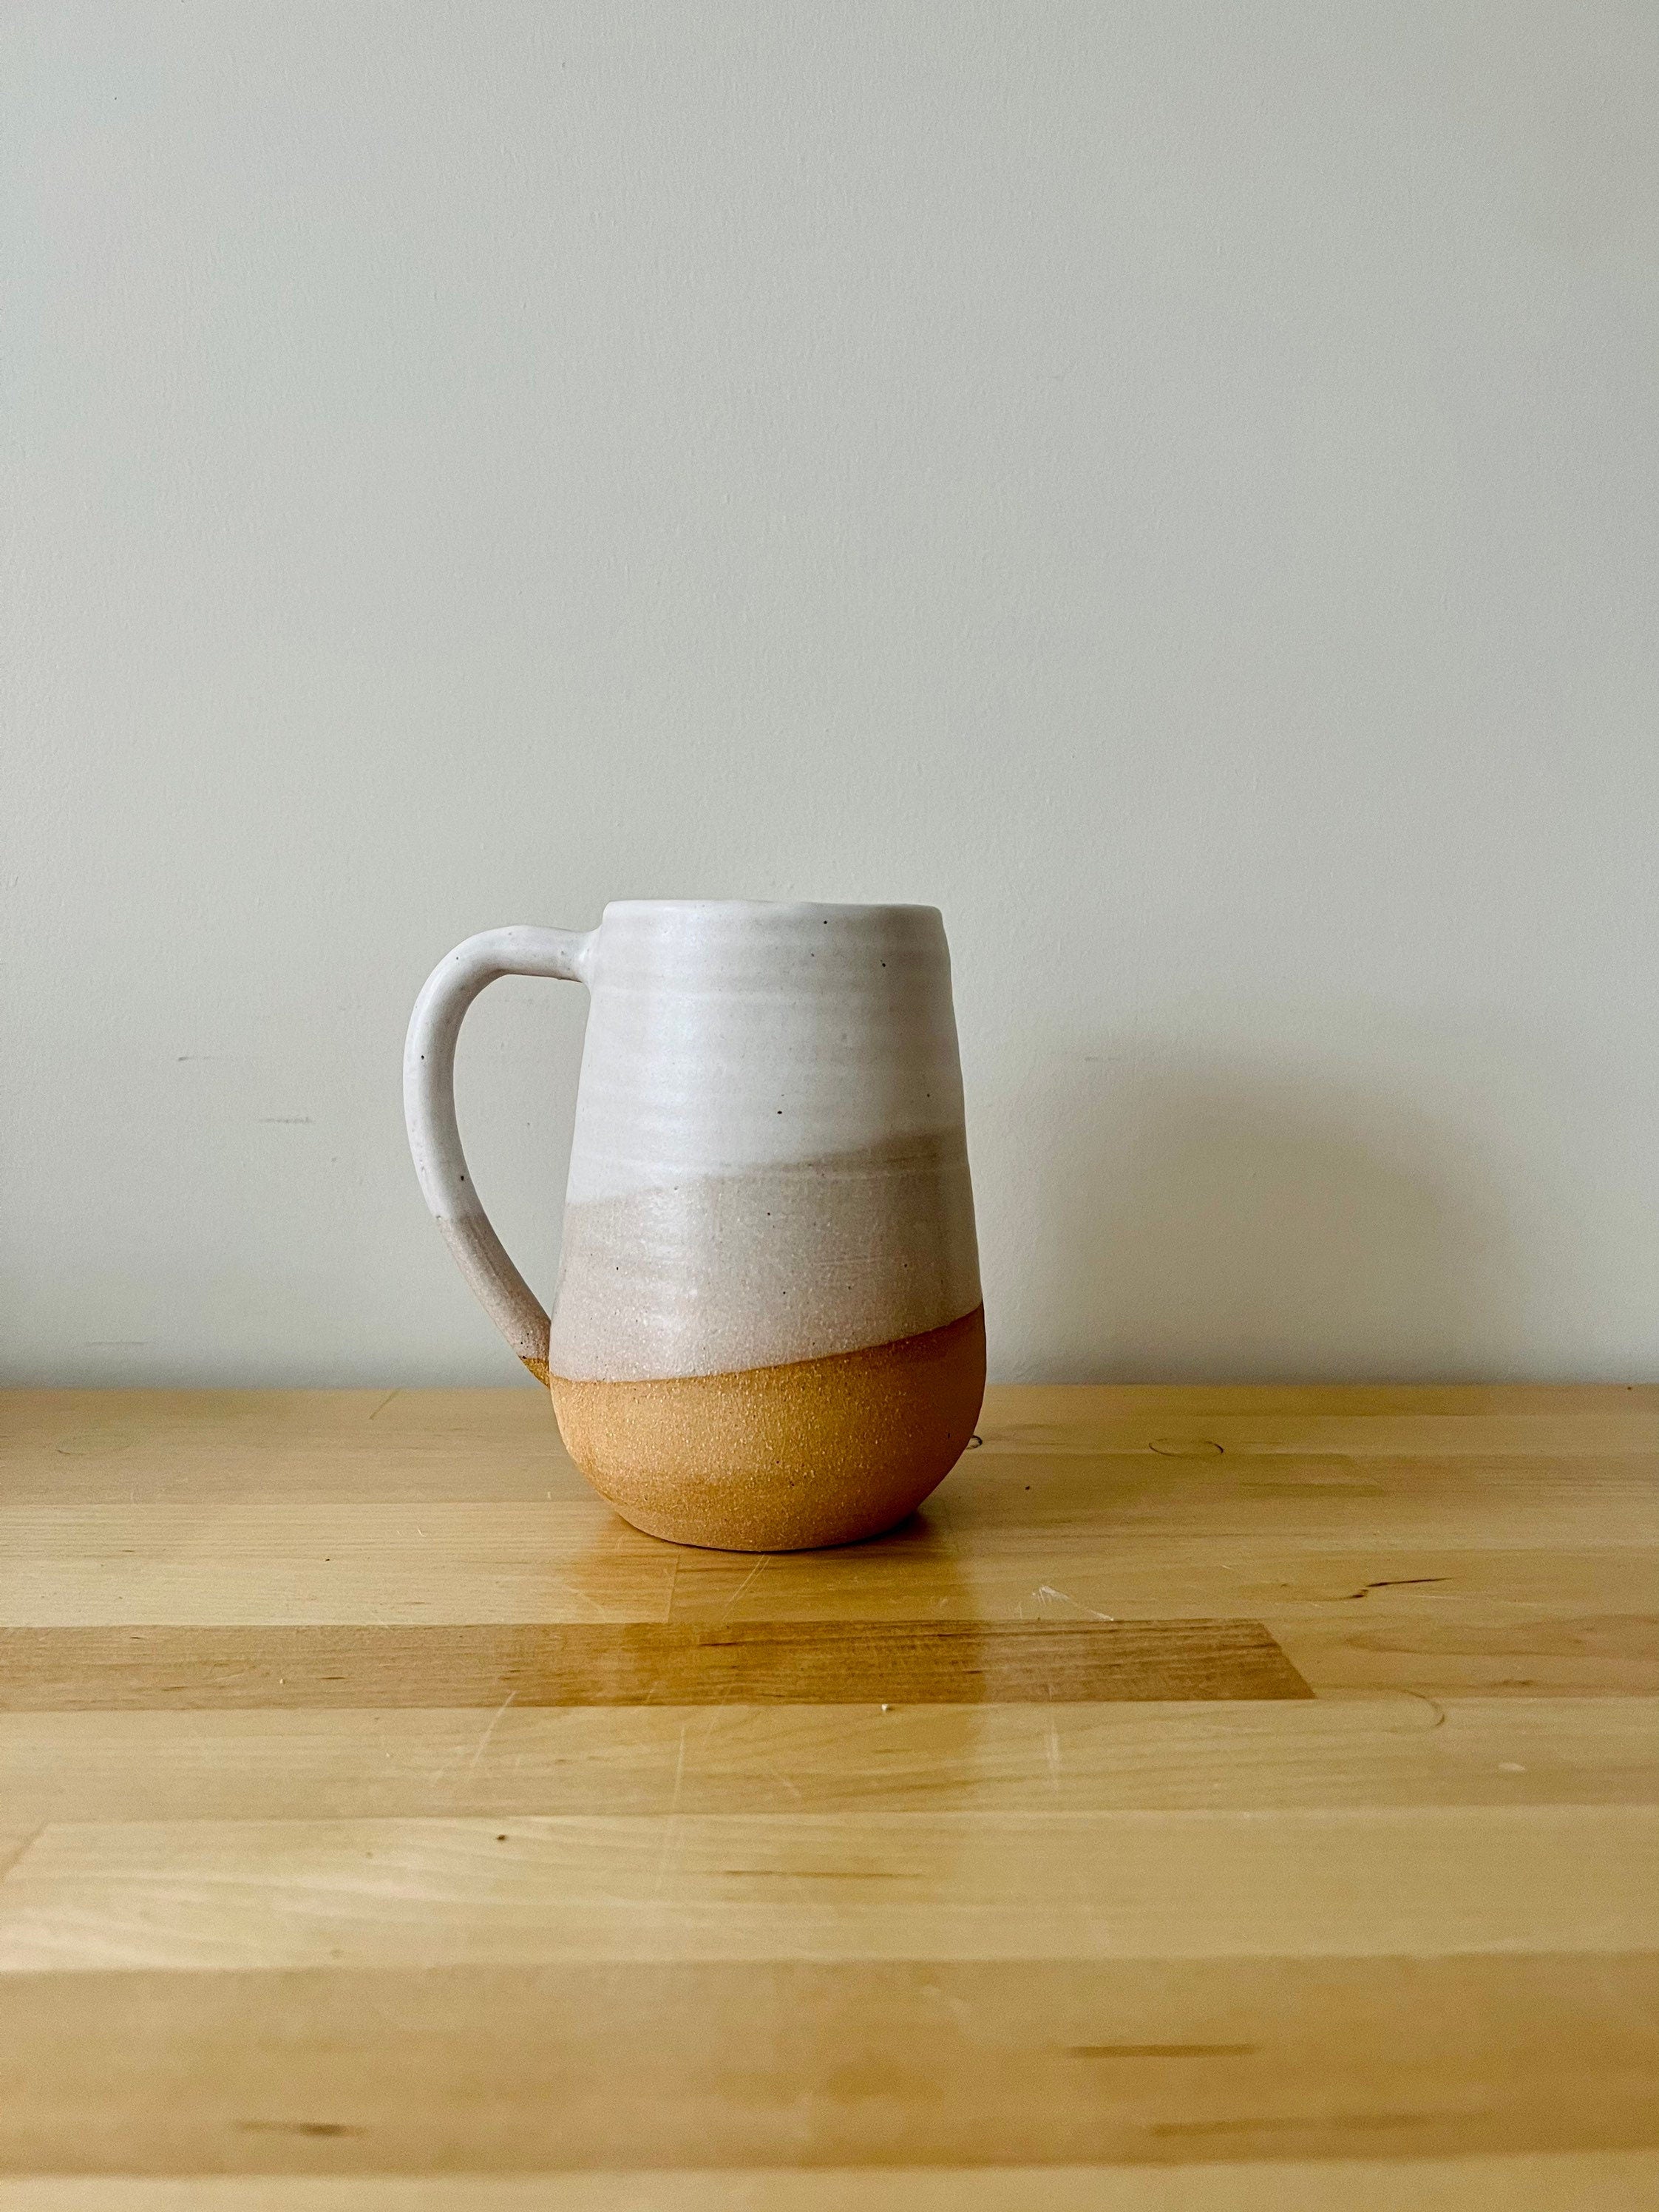 Tall Coffee Mugs With Handle